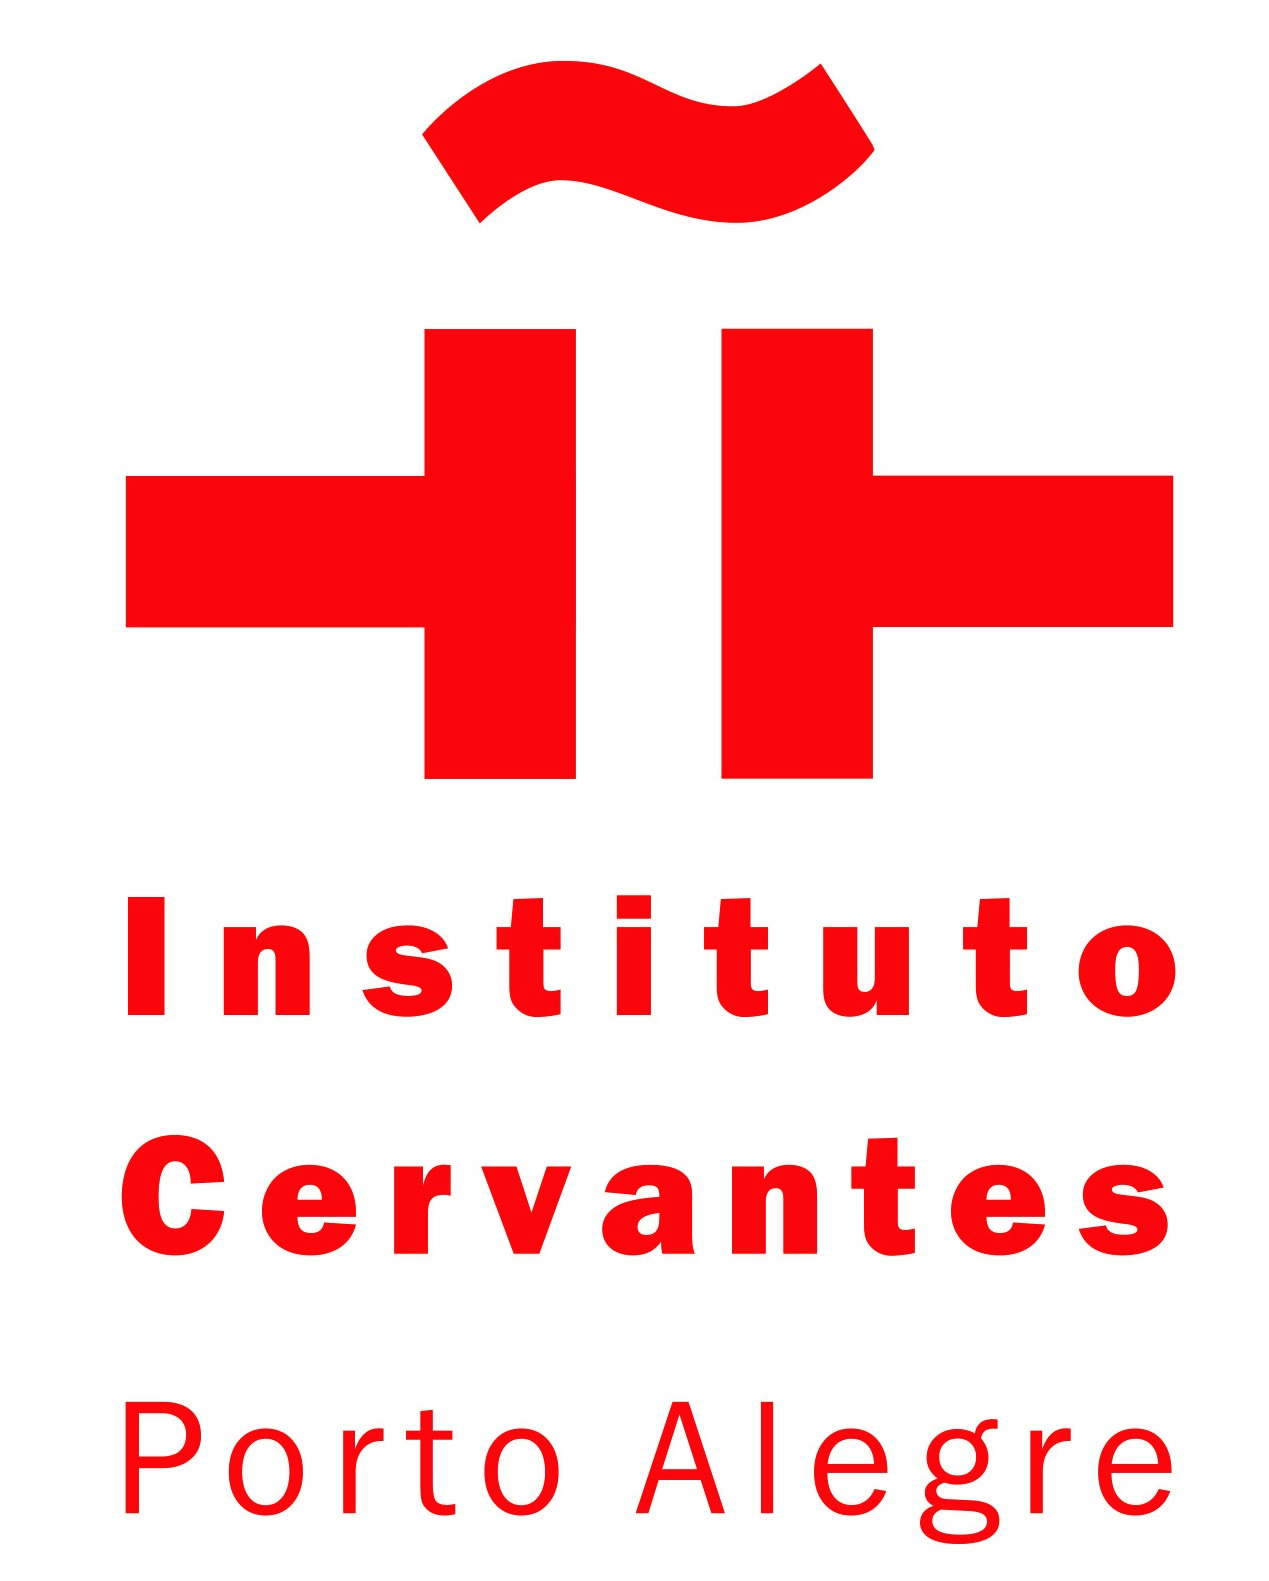 Instituto Cervantes (Porto Alegre)